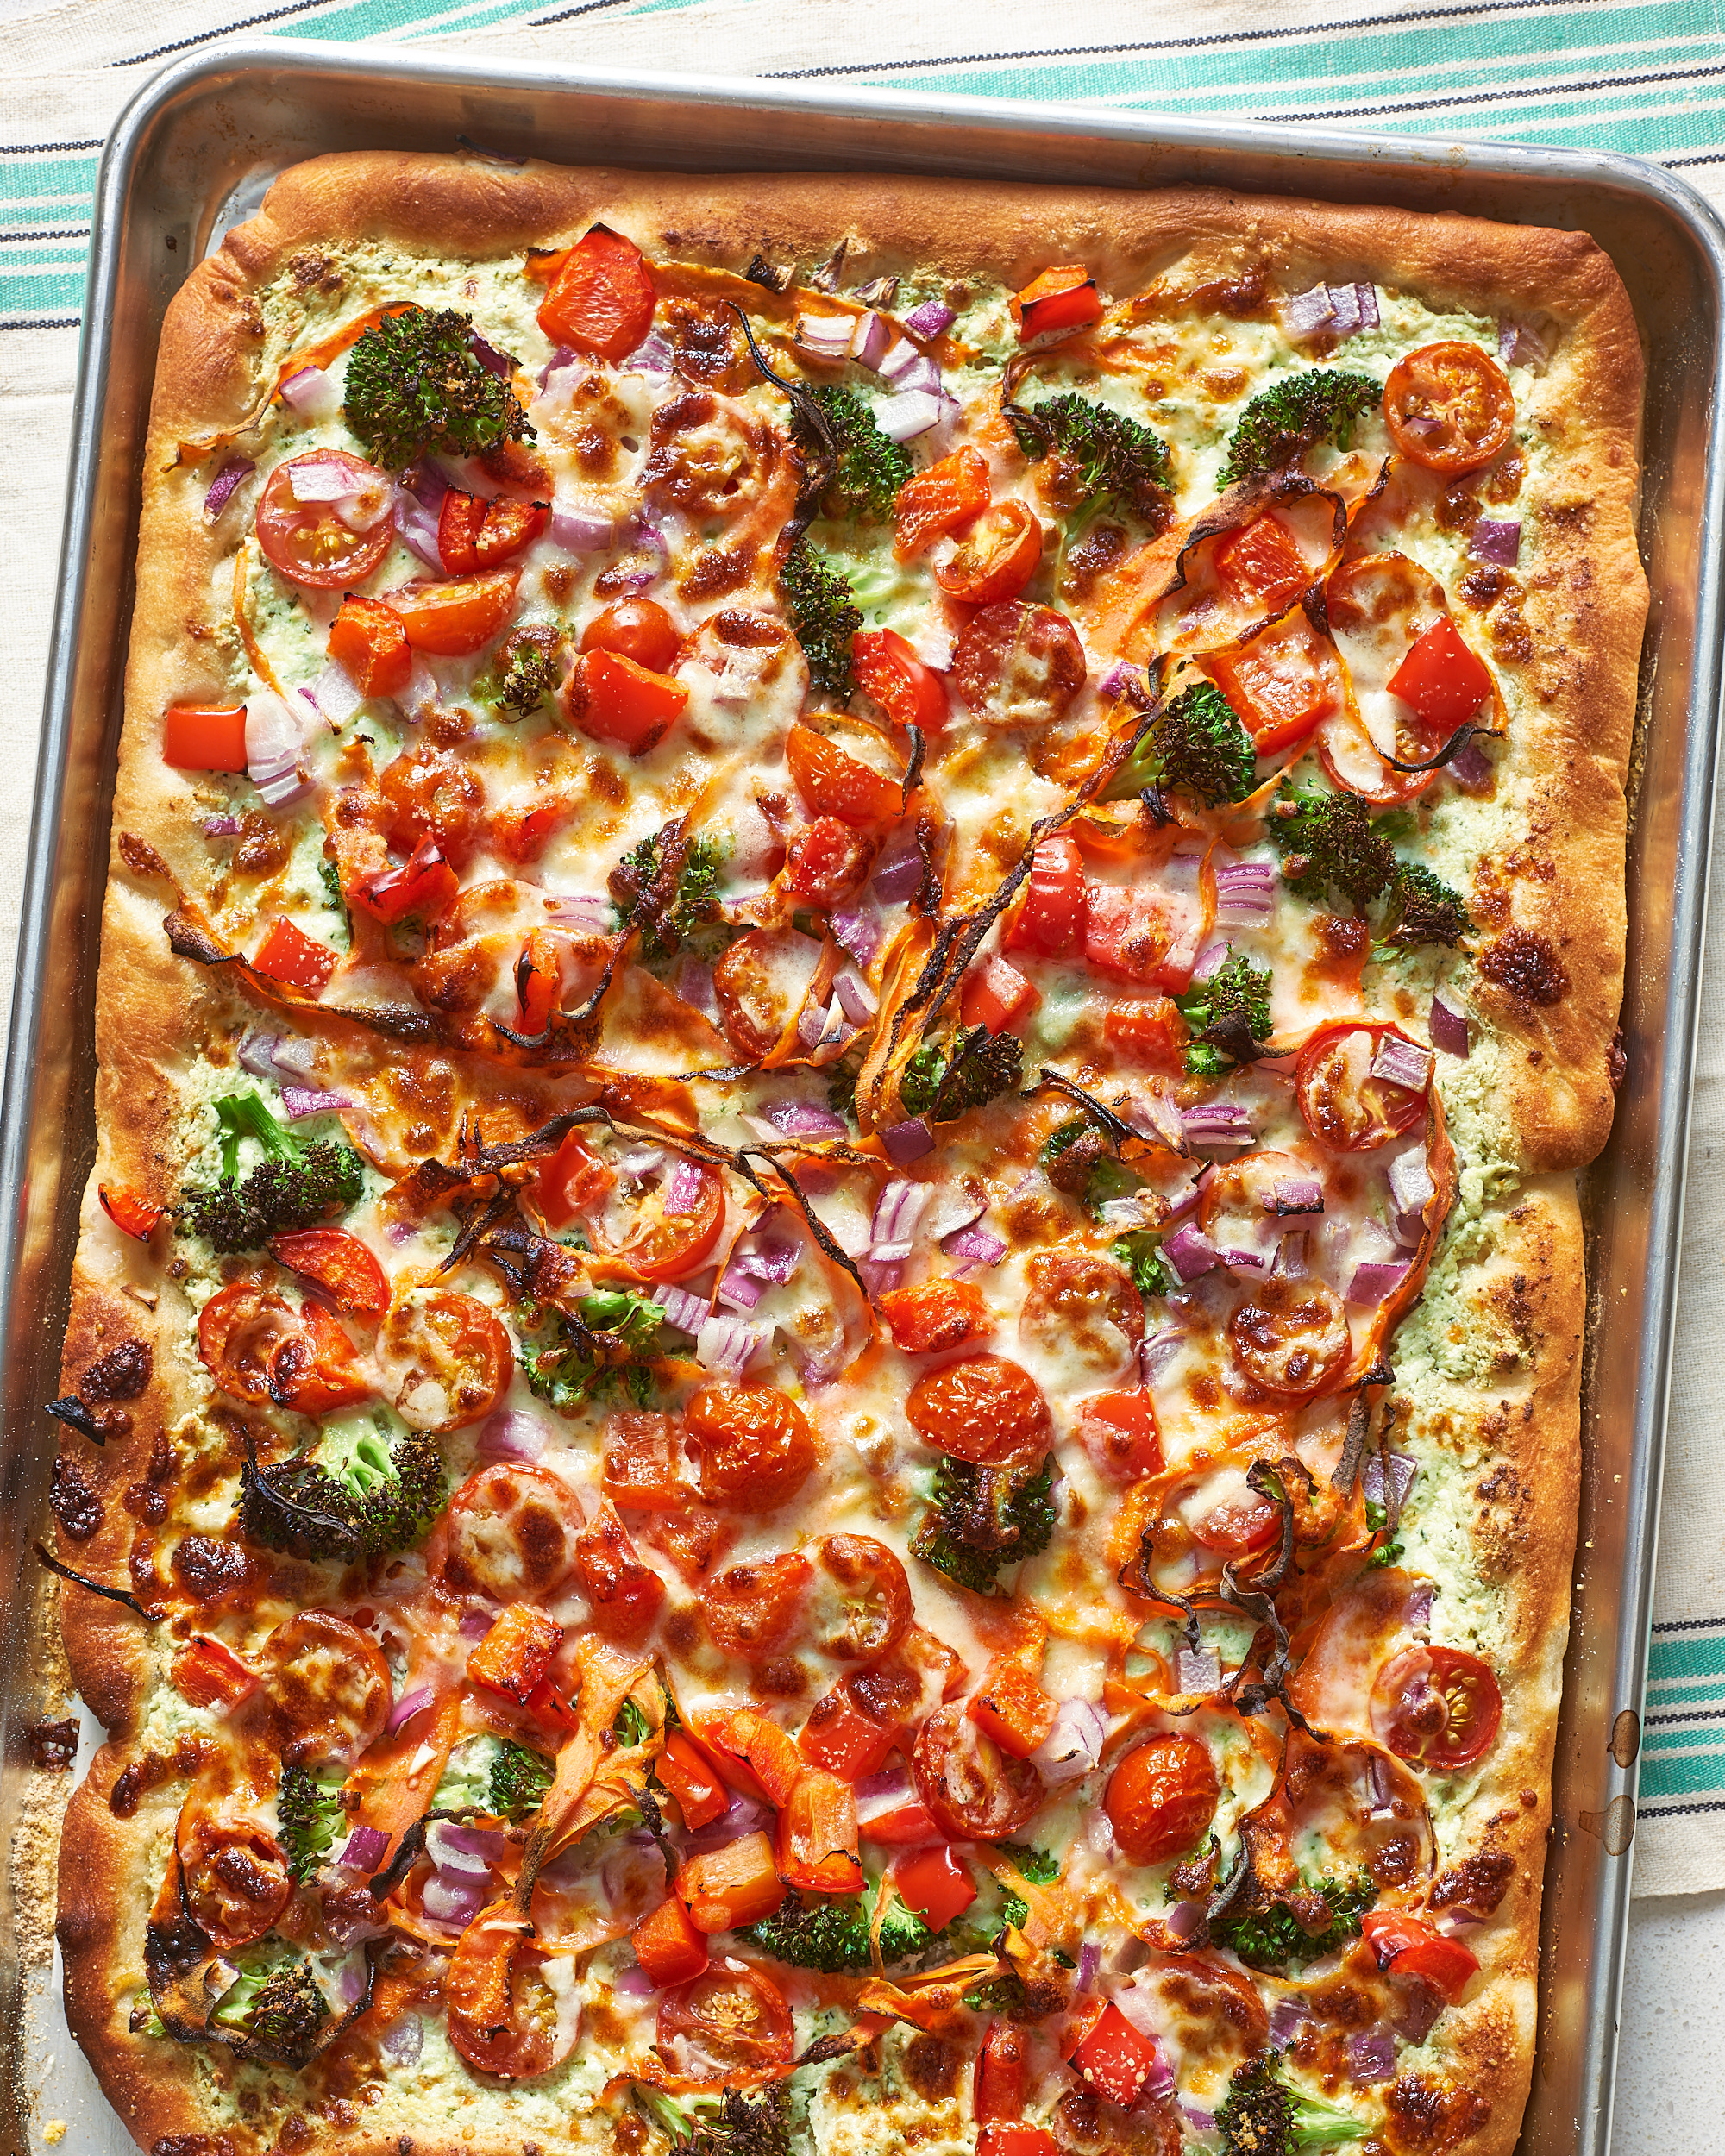 Пицца испечь в домашних условиях в духовке. Пицца домашняя. Красивая пицца домашняя. Пицца квадратная домашняя. Пицца домашняя в духовке.